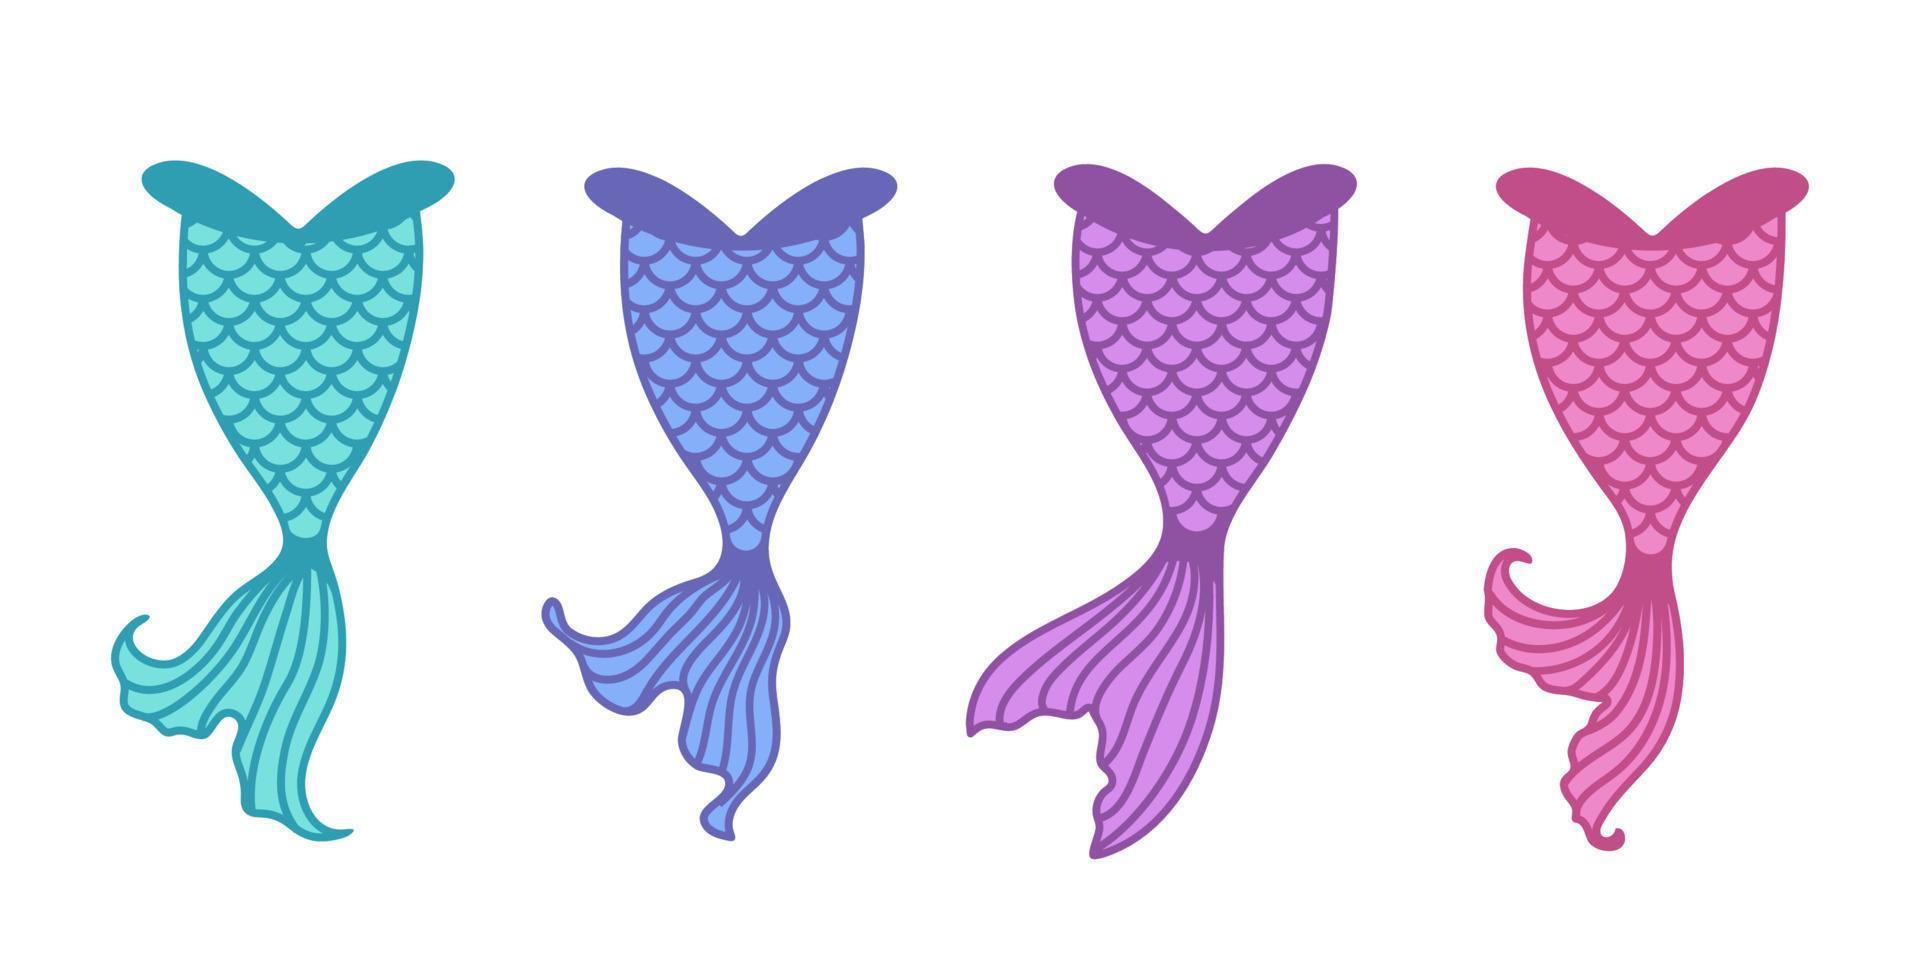 undervattens sjöjungfru svans siluett söta festdekorationer för flickor vektor